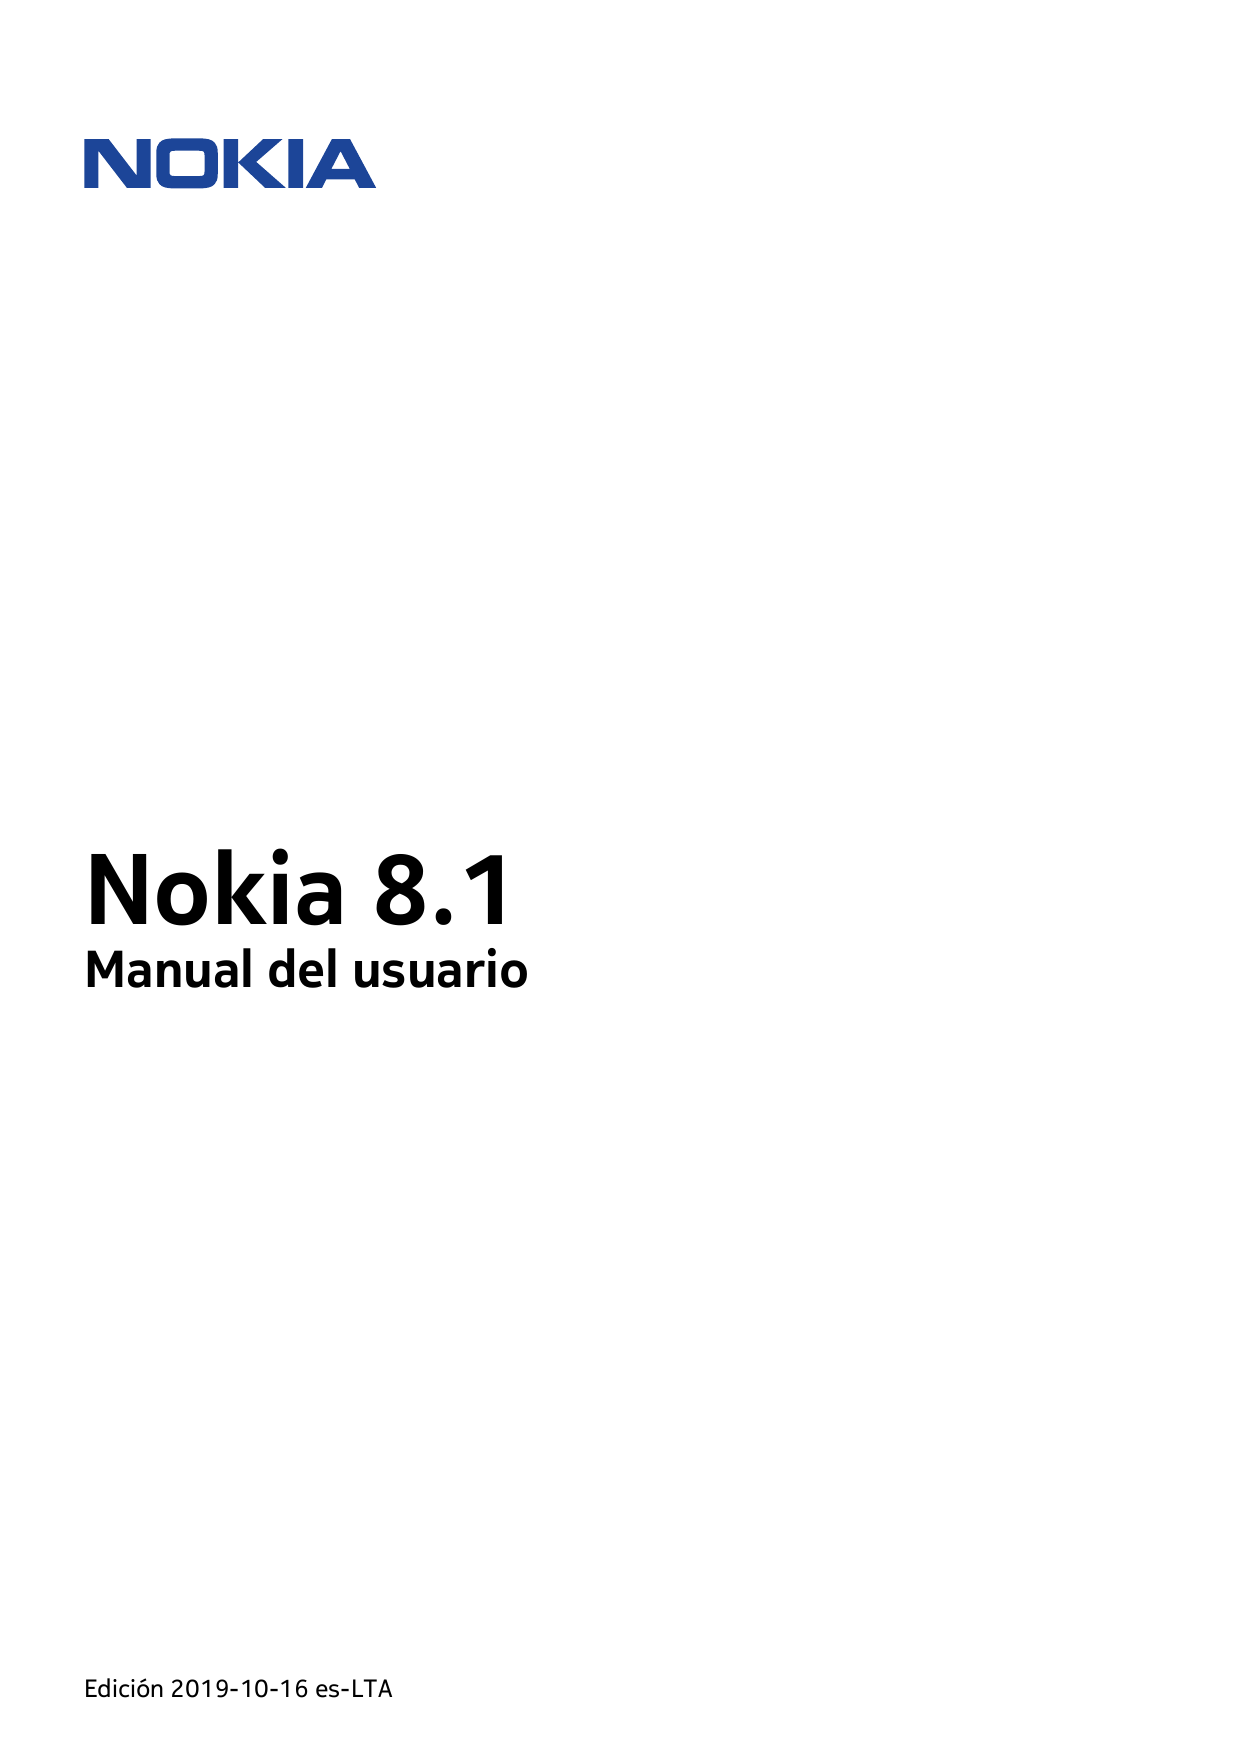 Nokia 8.1Manual del usuarioEdición 2019-10-16 es-LTA